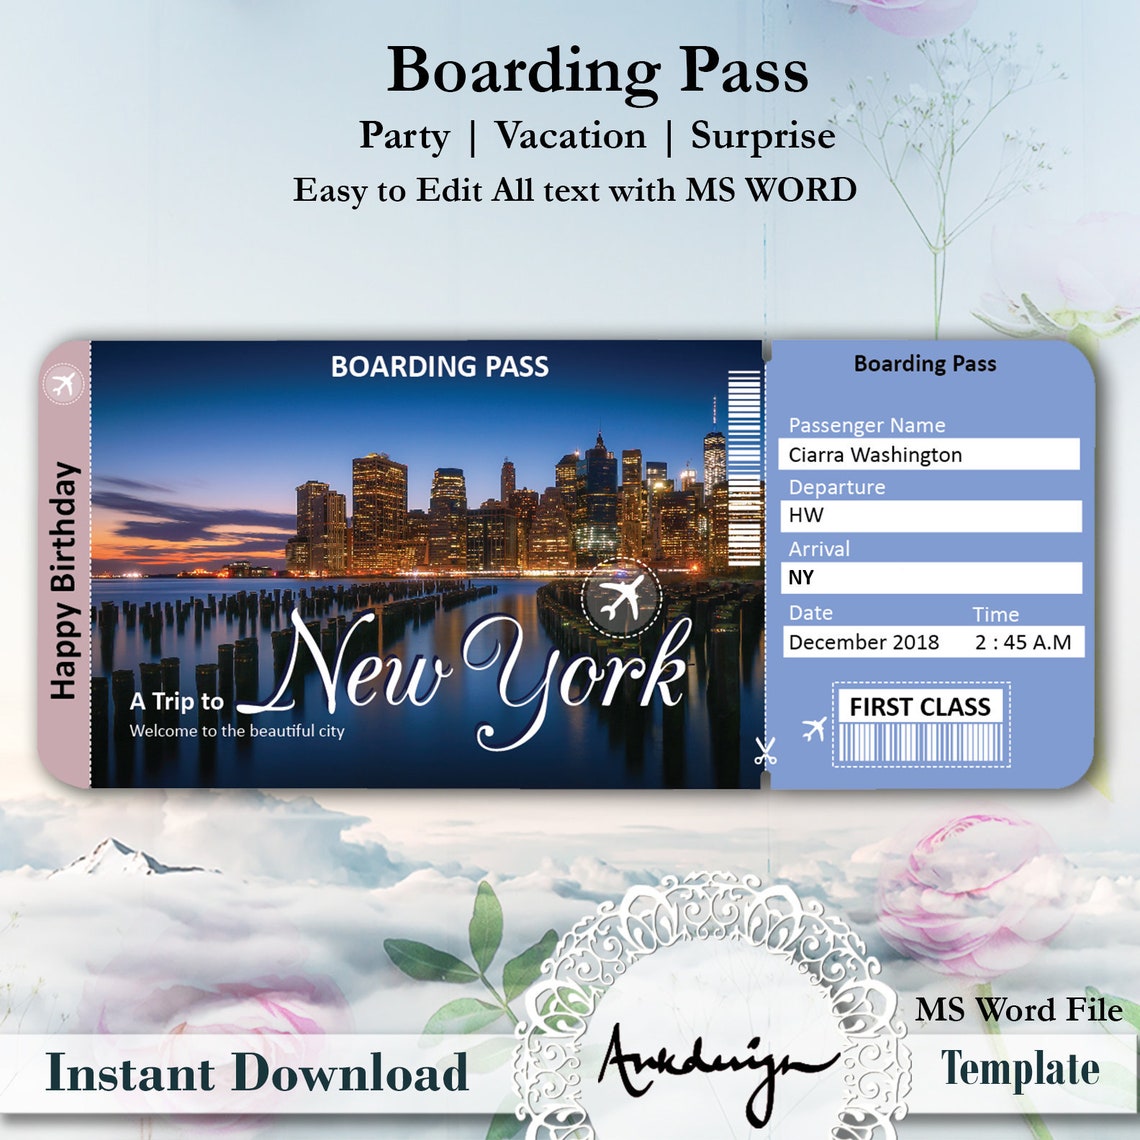 round trip plane tickets to new york